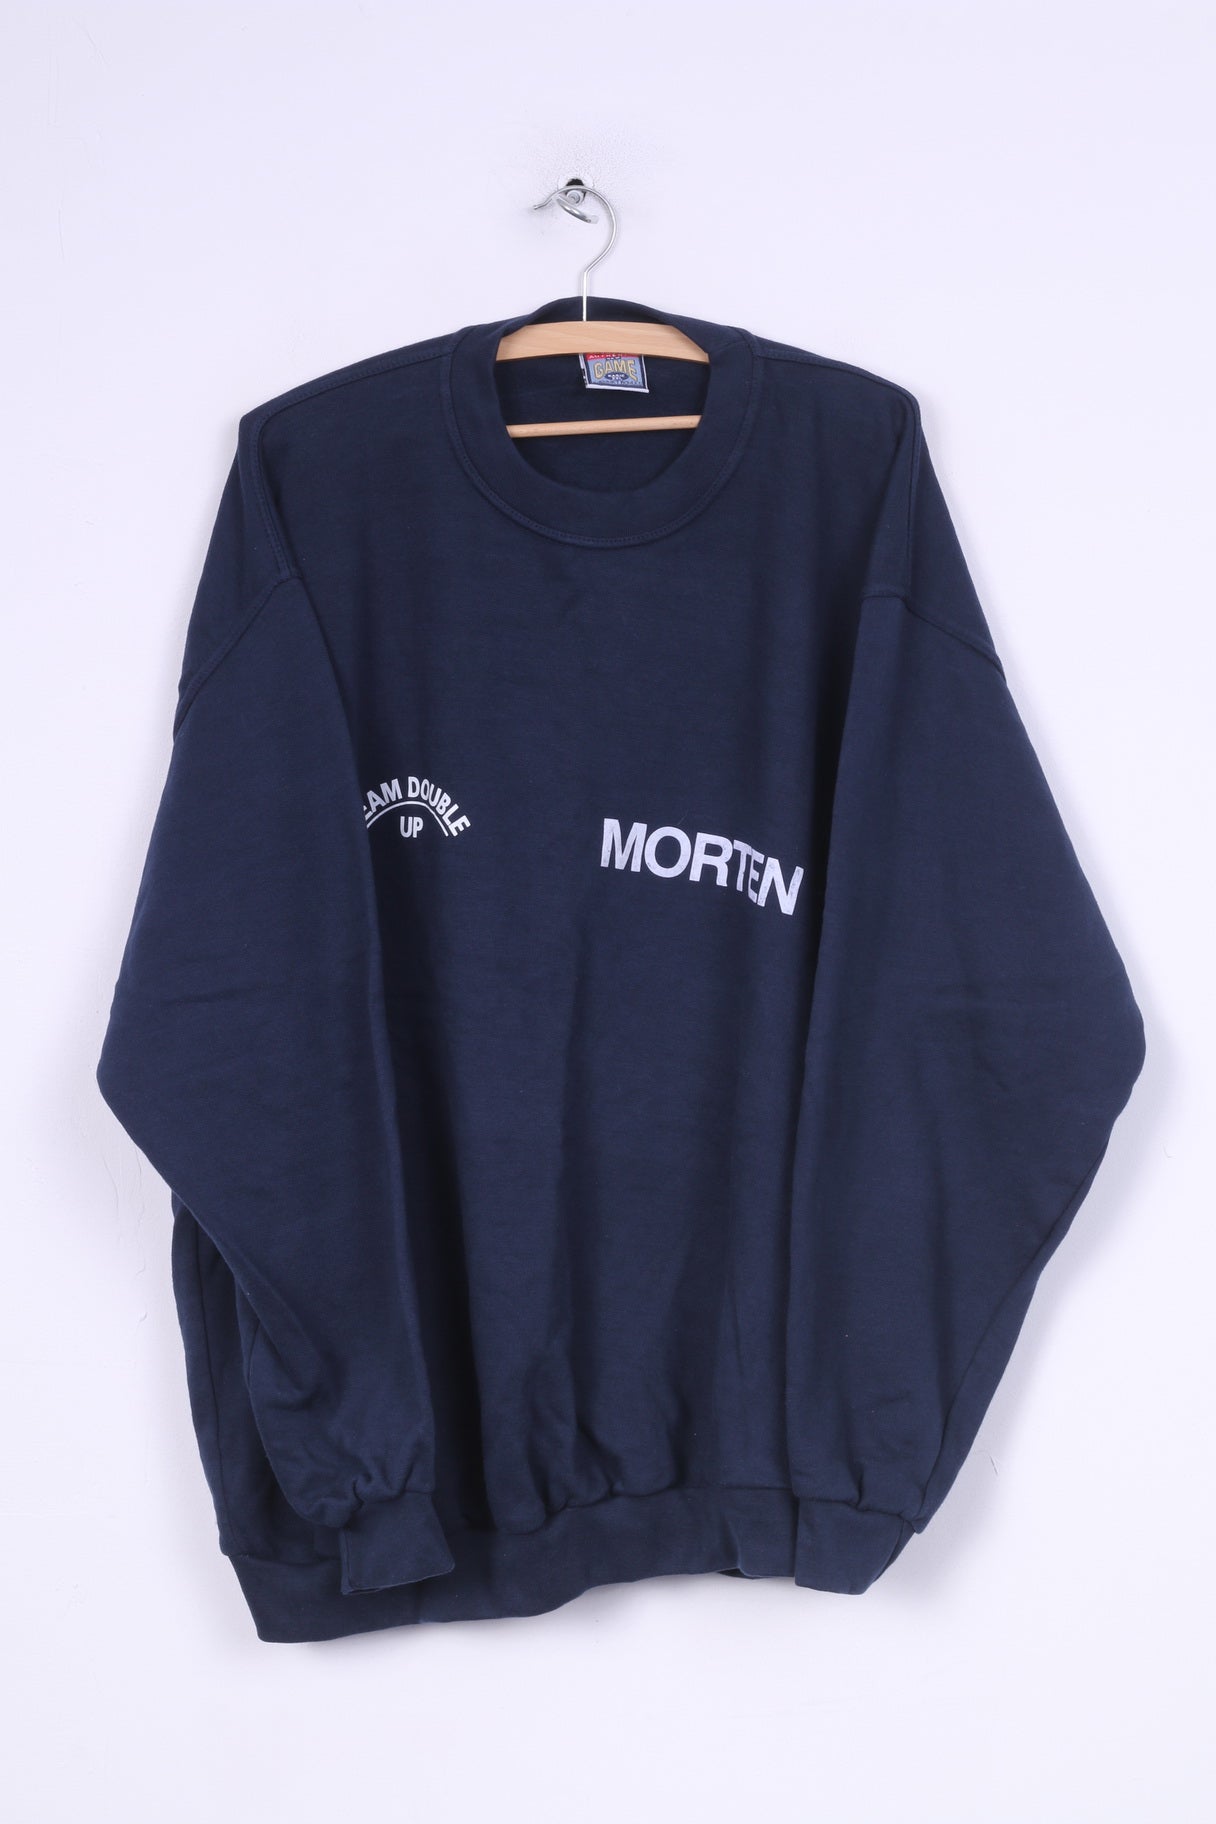 Game Authentic Mens XL Sweatshirt Jumper Navy Cotton Morten Diskotek